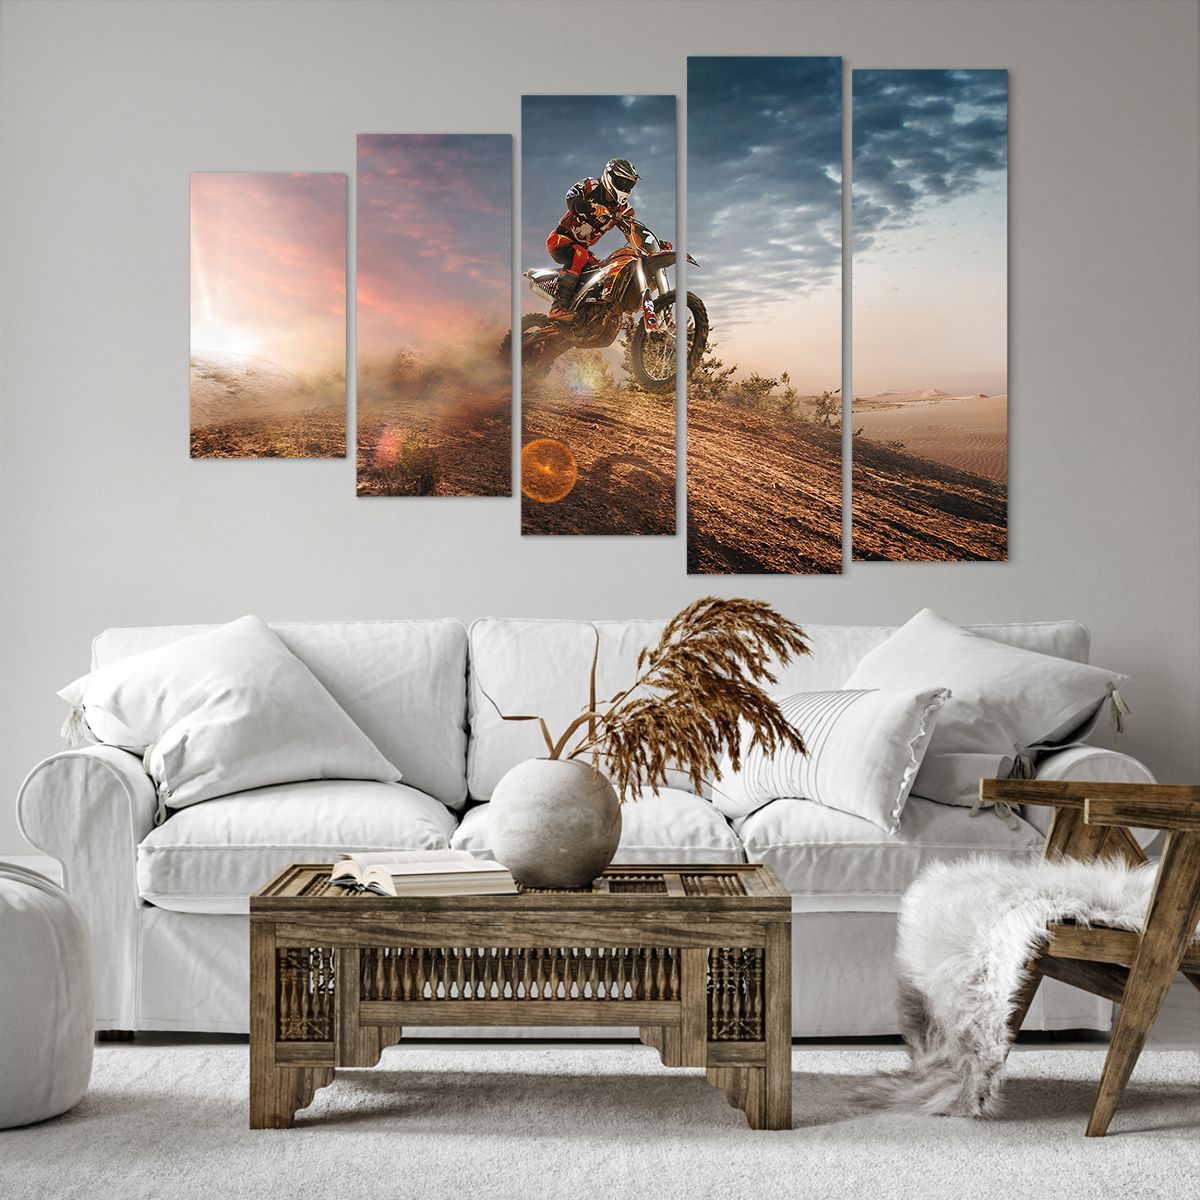 Bild auf Leinwand Sport, Bild auf Leinwand Moto-Cross, Bild auf Leinwand Motorradfahrer, Bild auf Leinwand Wettbewerb, Bild auf Leinwand Geschwindigkeit